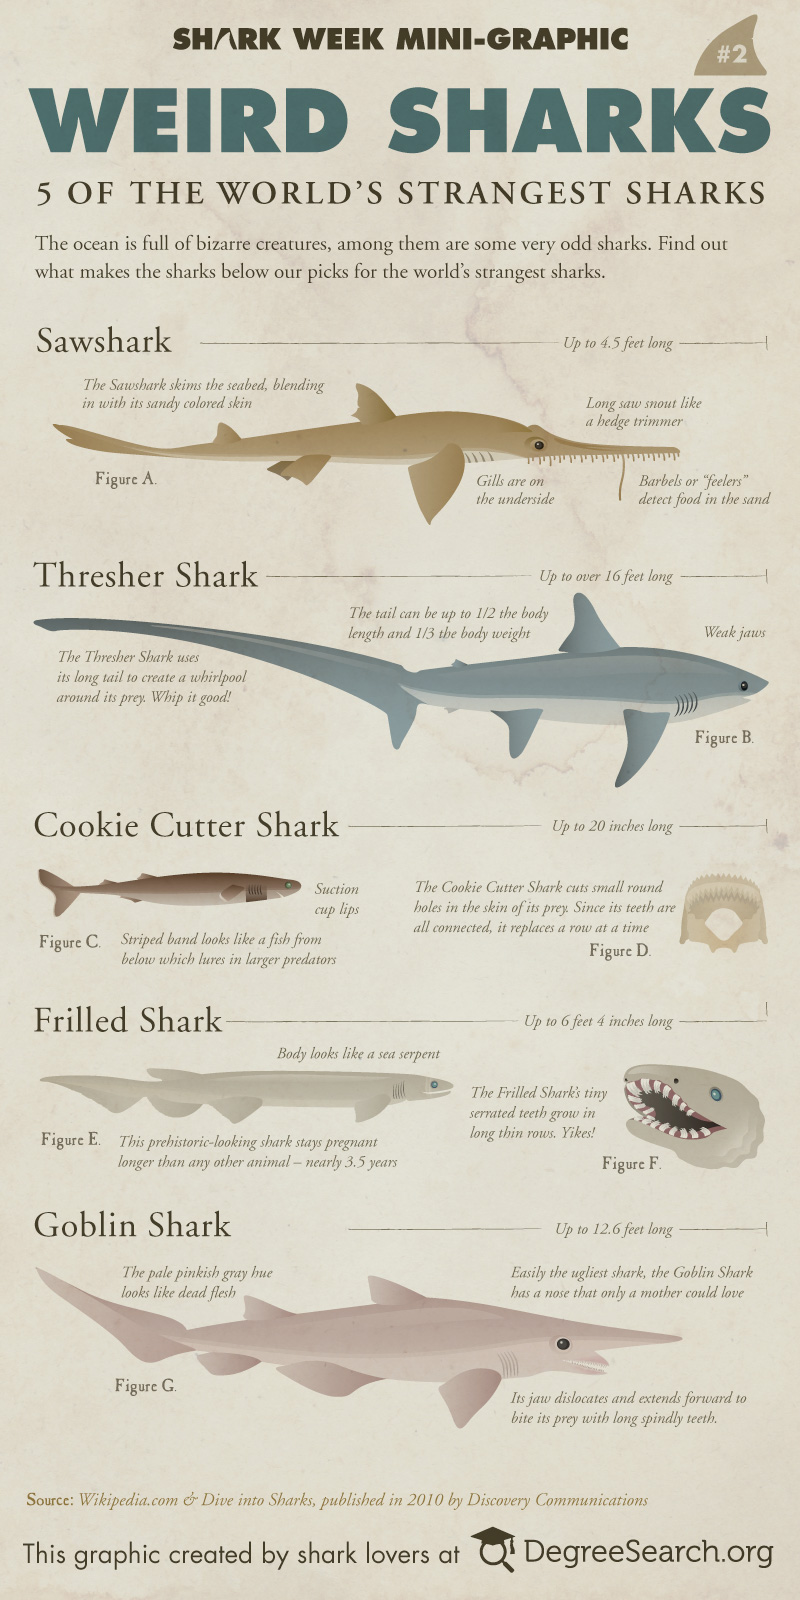 Shark Week: 5 Weird Sharks [infographic]